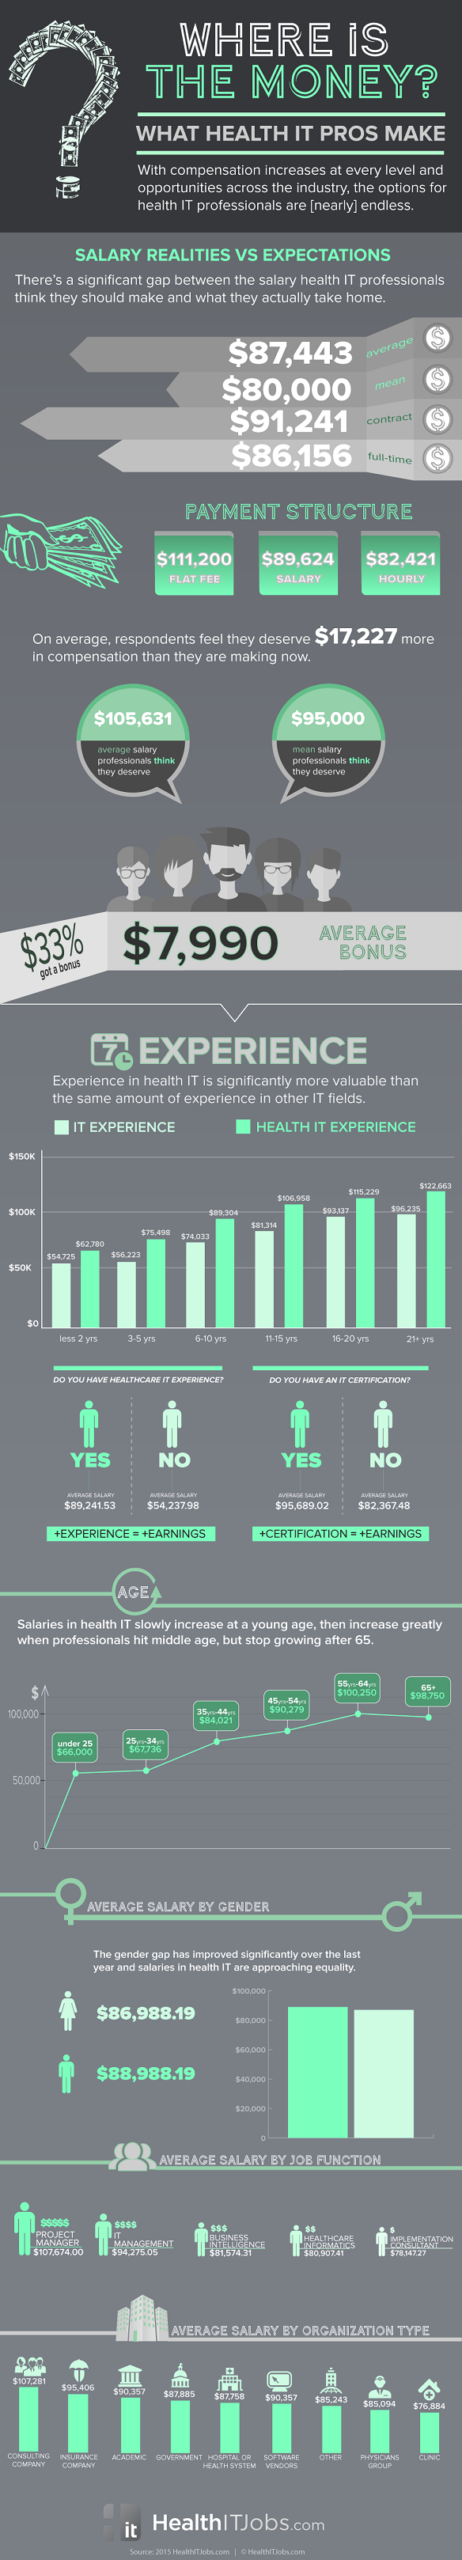 2015-HealthITJobs-SalarySurvey-Infographic